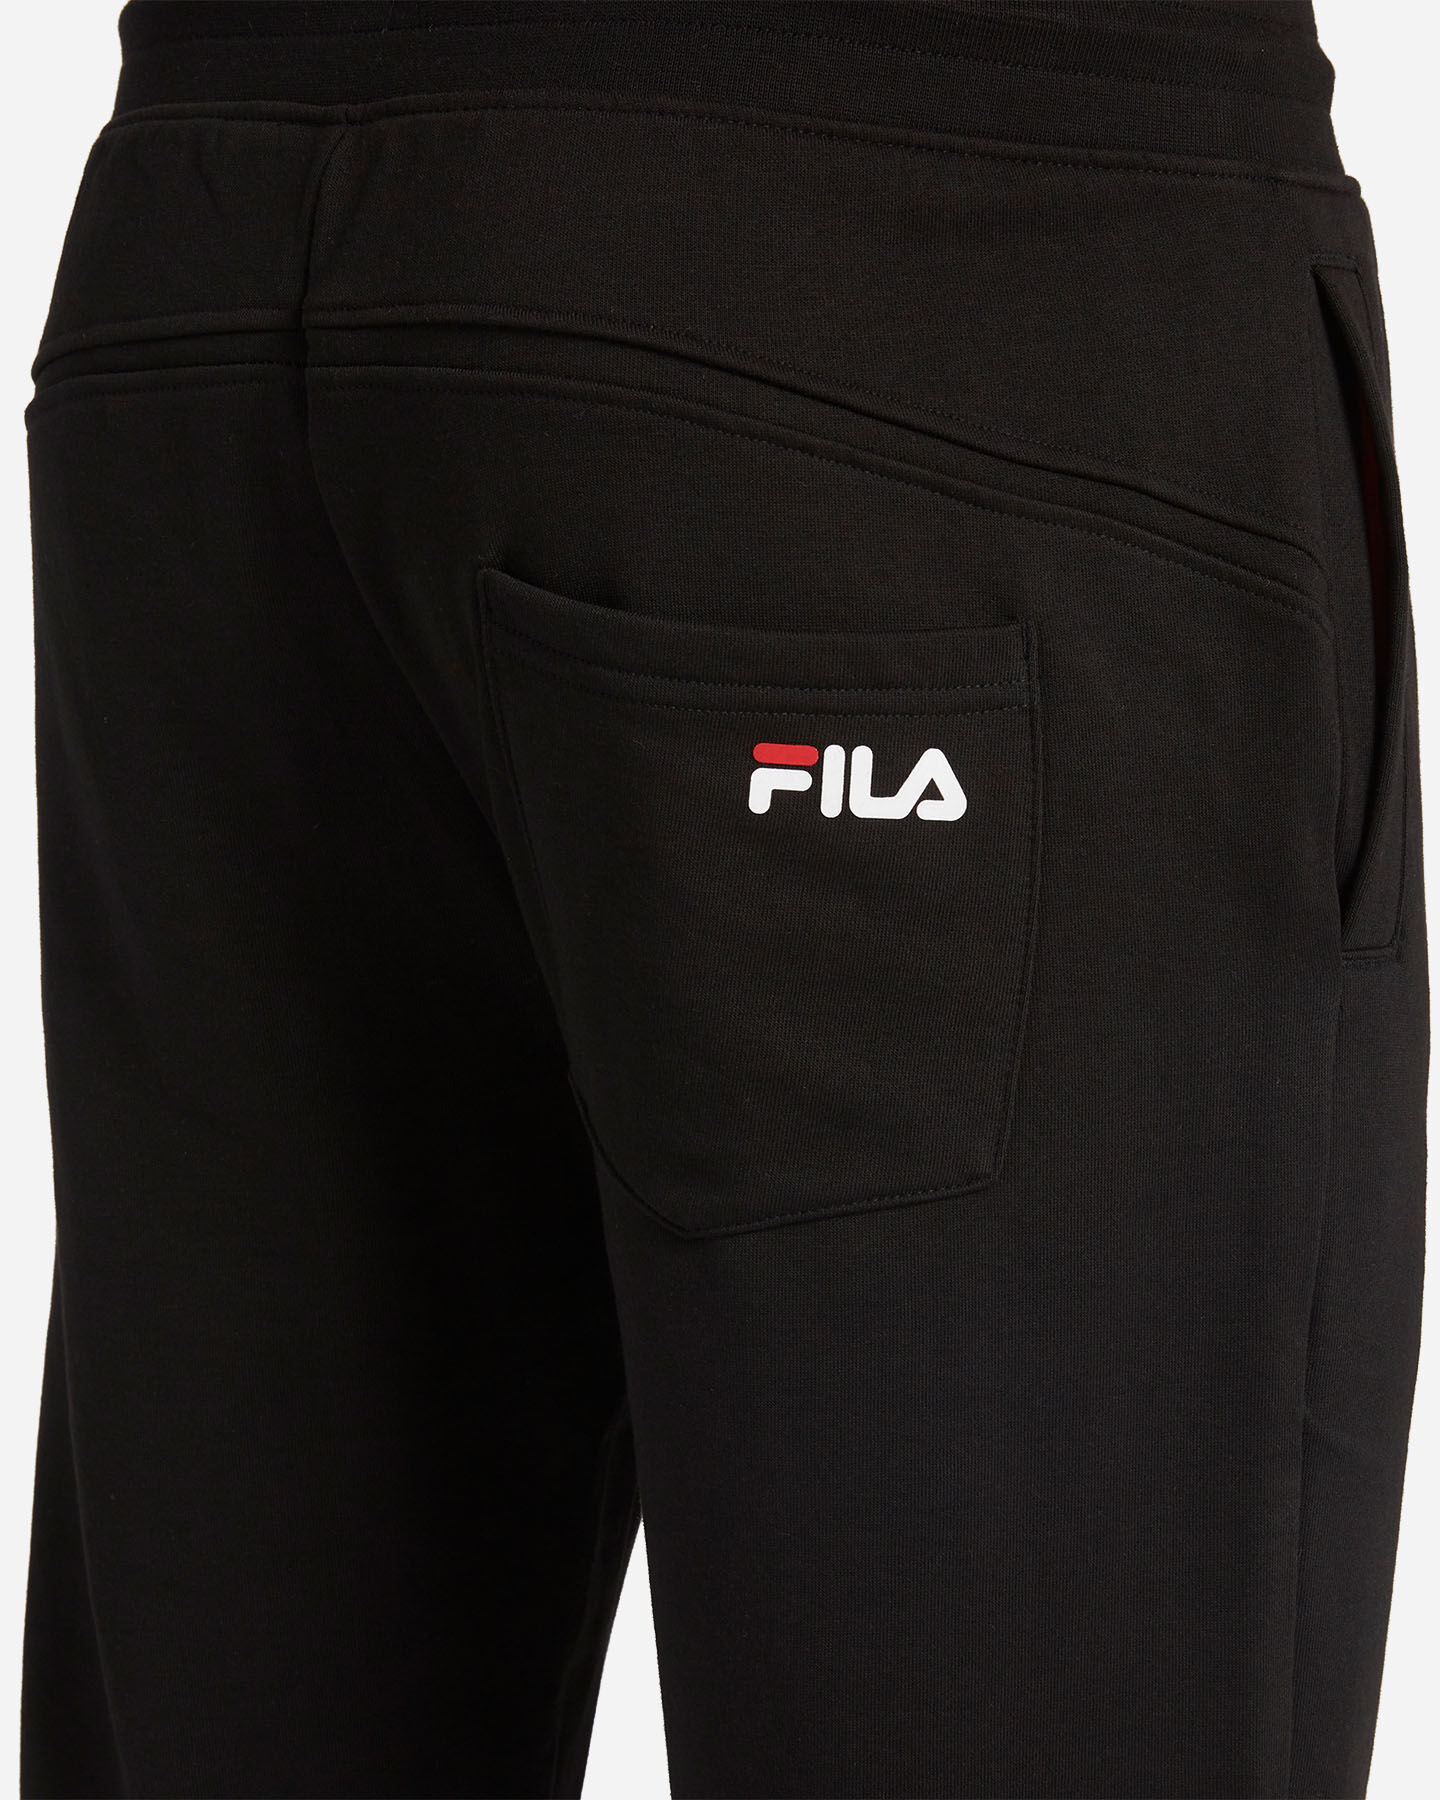  Pantalone FILA LOGO M S4058597|050|S scatto 3